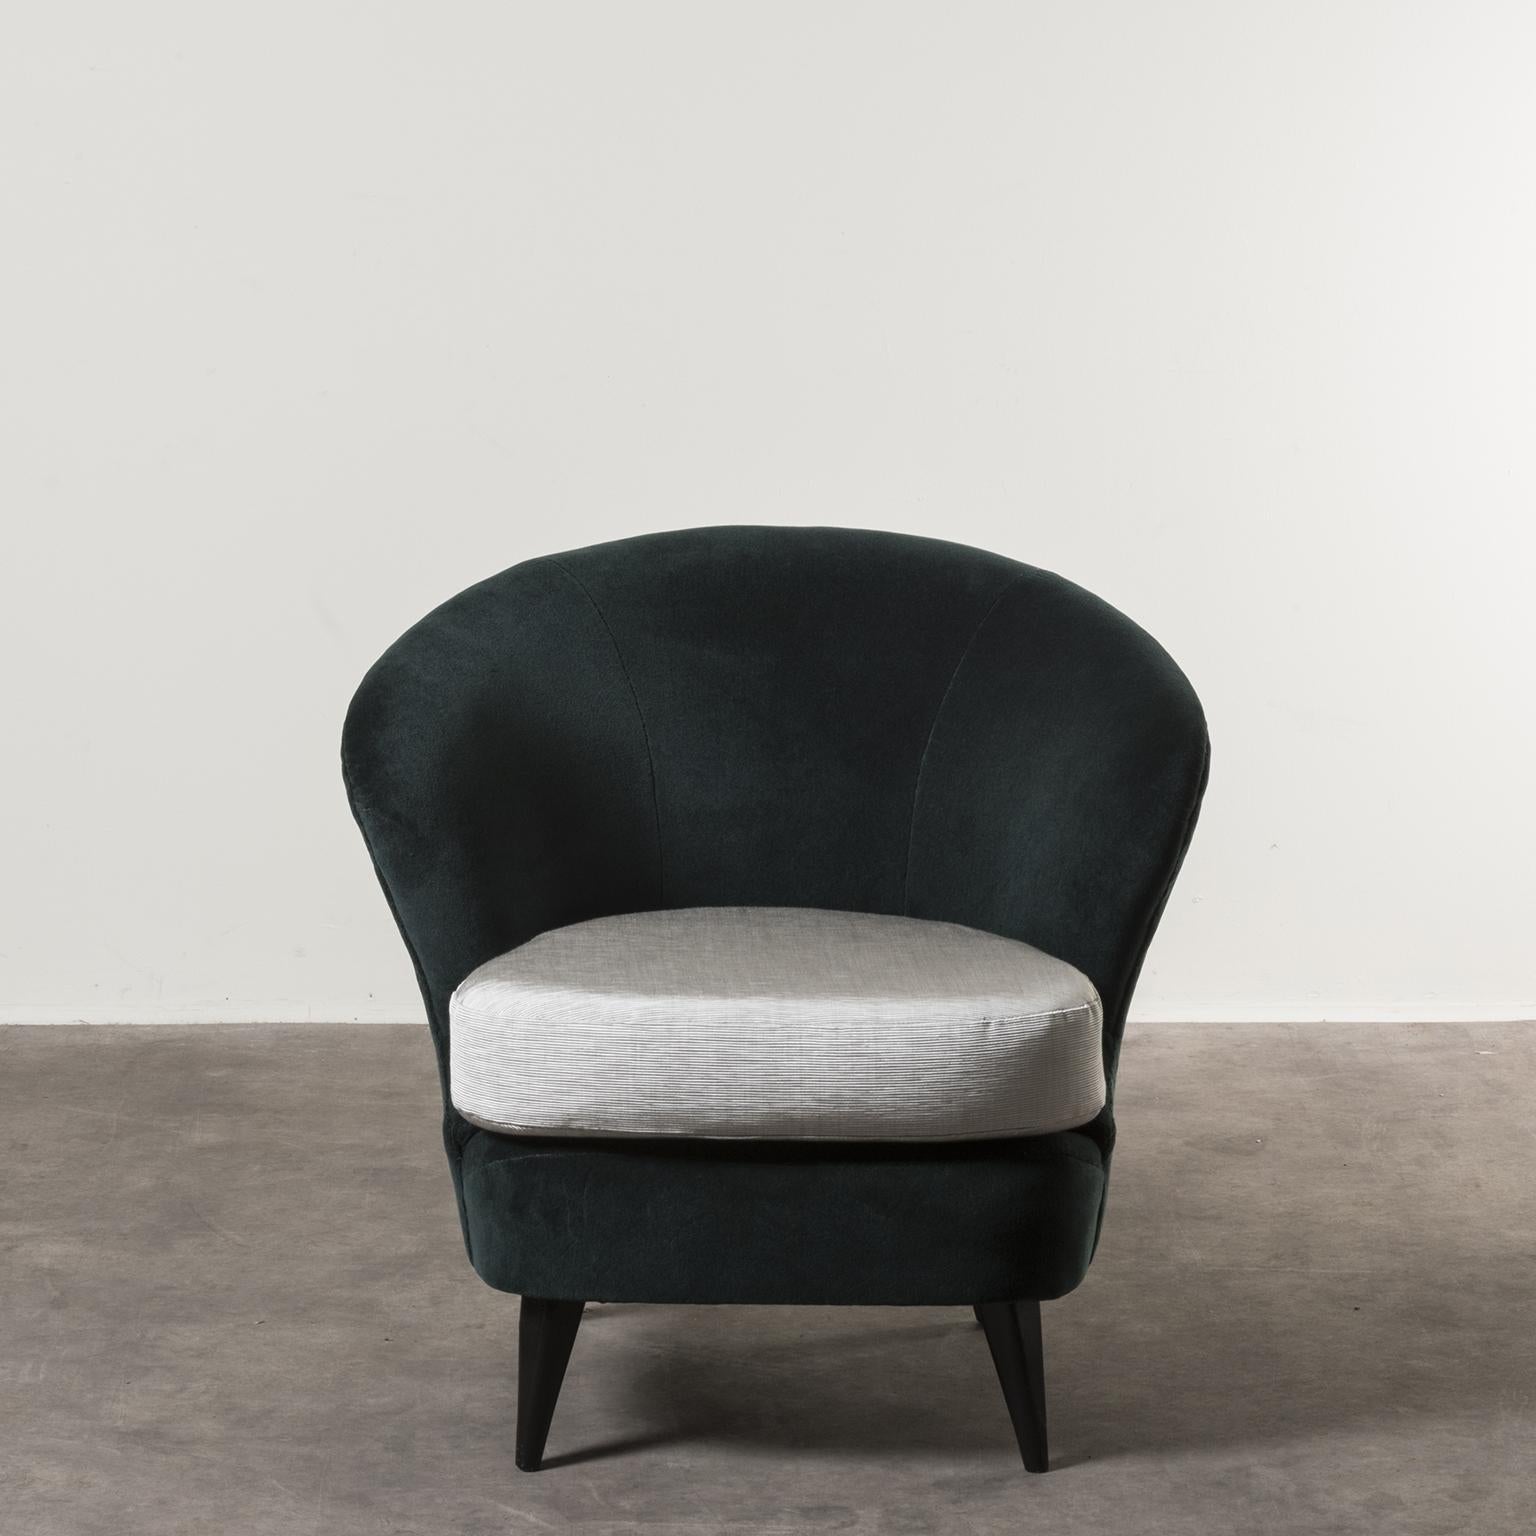 Pair of concha armchairs by Joaquim Tenreiro, Brazil, 1950. Manufactured by Tenreiro Mo´veis e Decorac¸o~es. Wood, fabric upholstery. Measures: 80 x 86 x H 72 cm H seduta: 41 cm. 31.4 x 33.8 x H 28.3 in H seat 16.2 in
Literature: Soraia Cals,